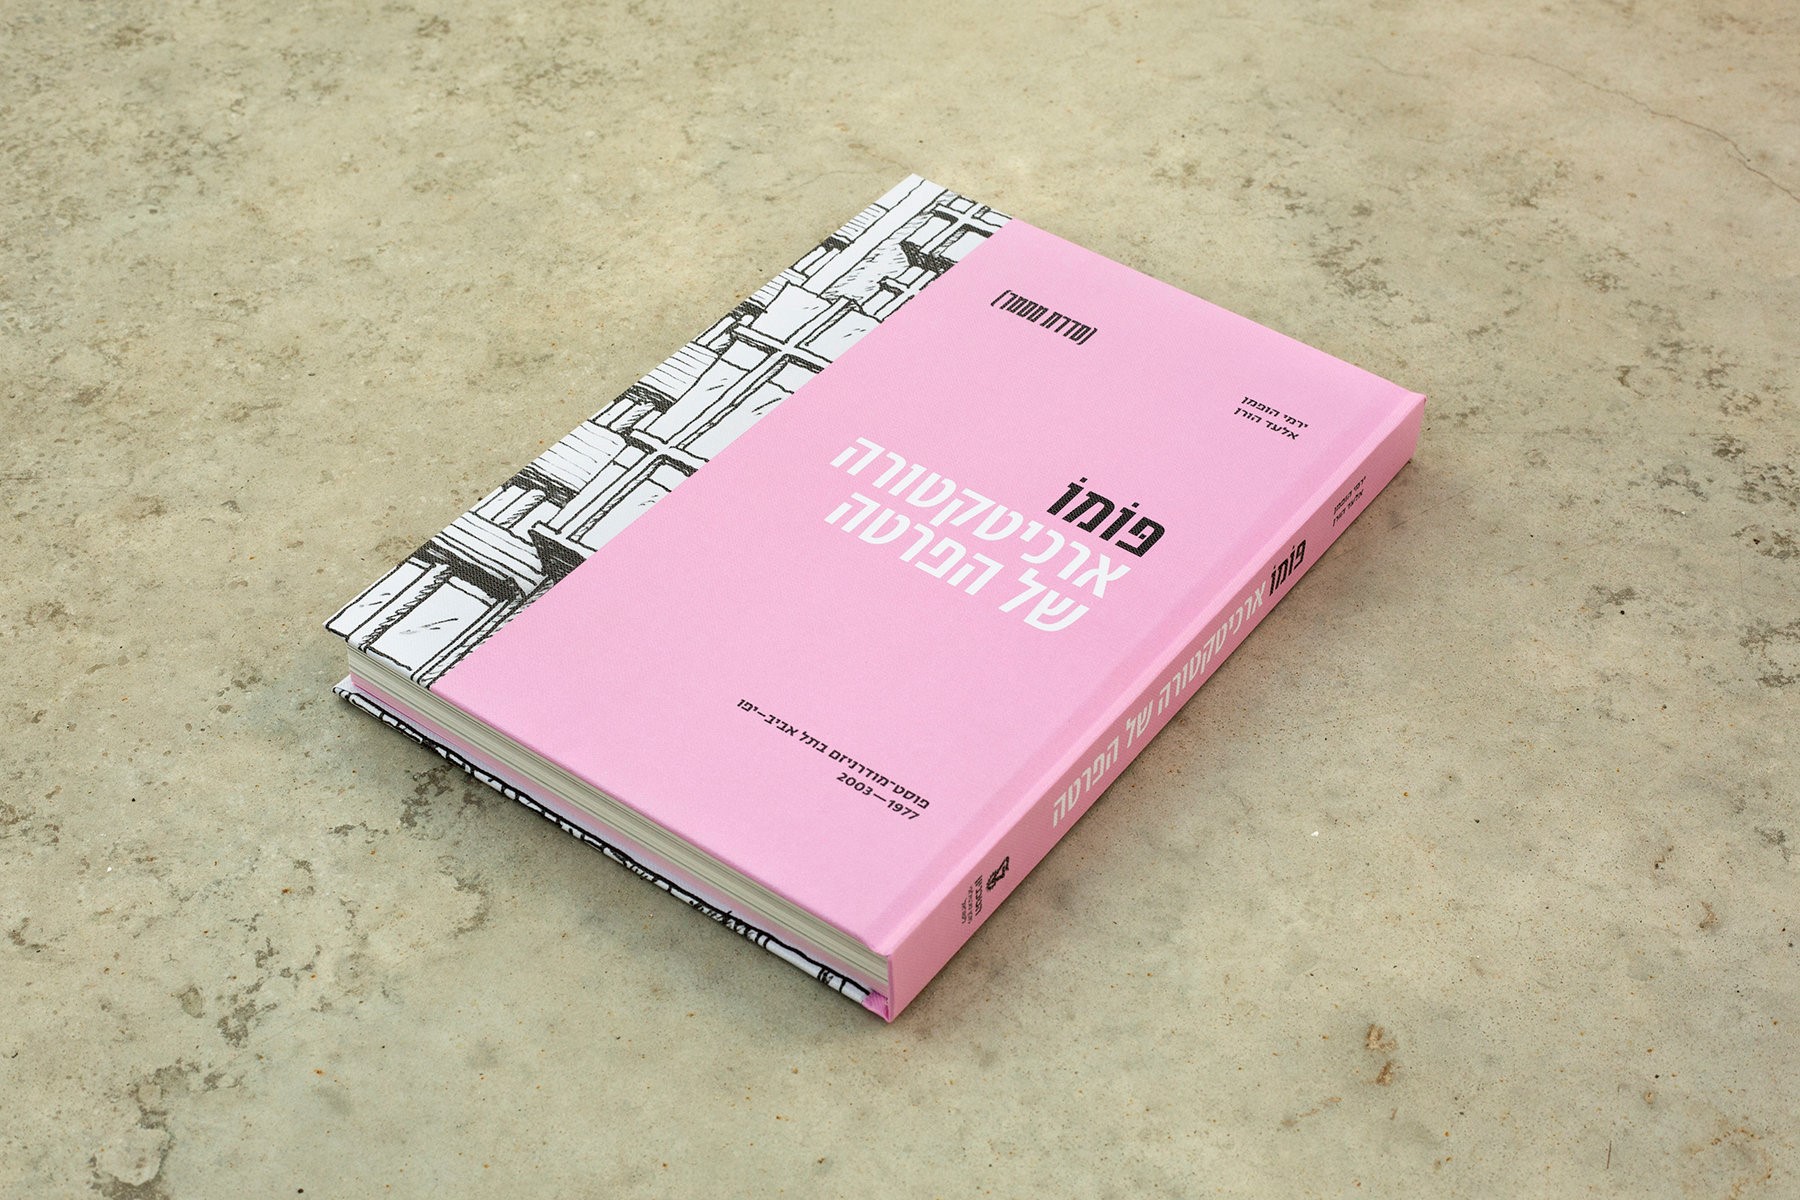 ספר חדש: "ת"א-יפו של פּוֹמוֹ" – אדריכלות של קפיטליזם והפרטה